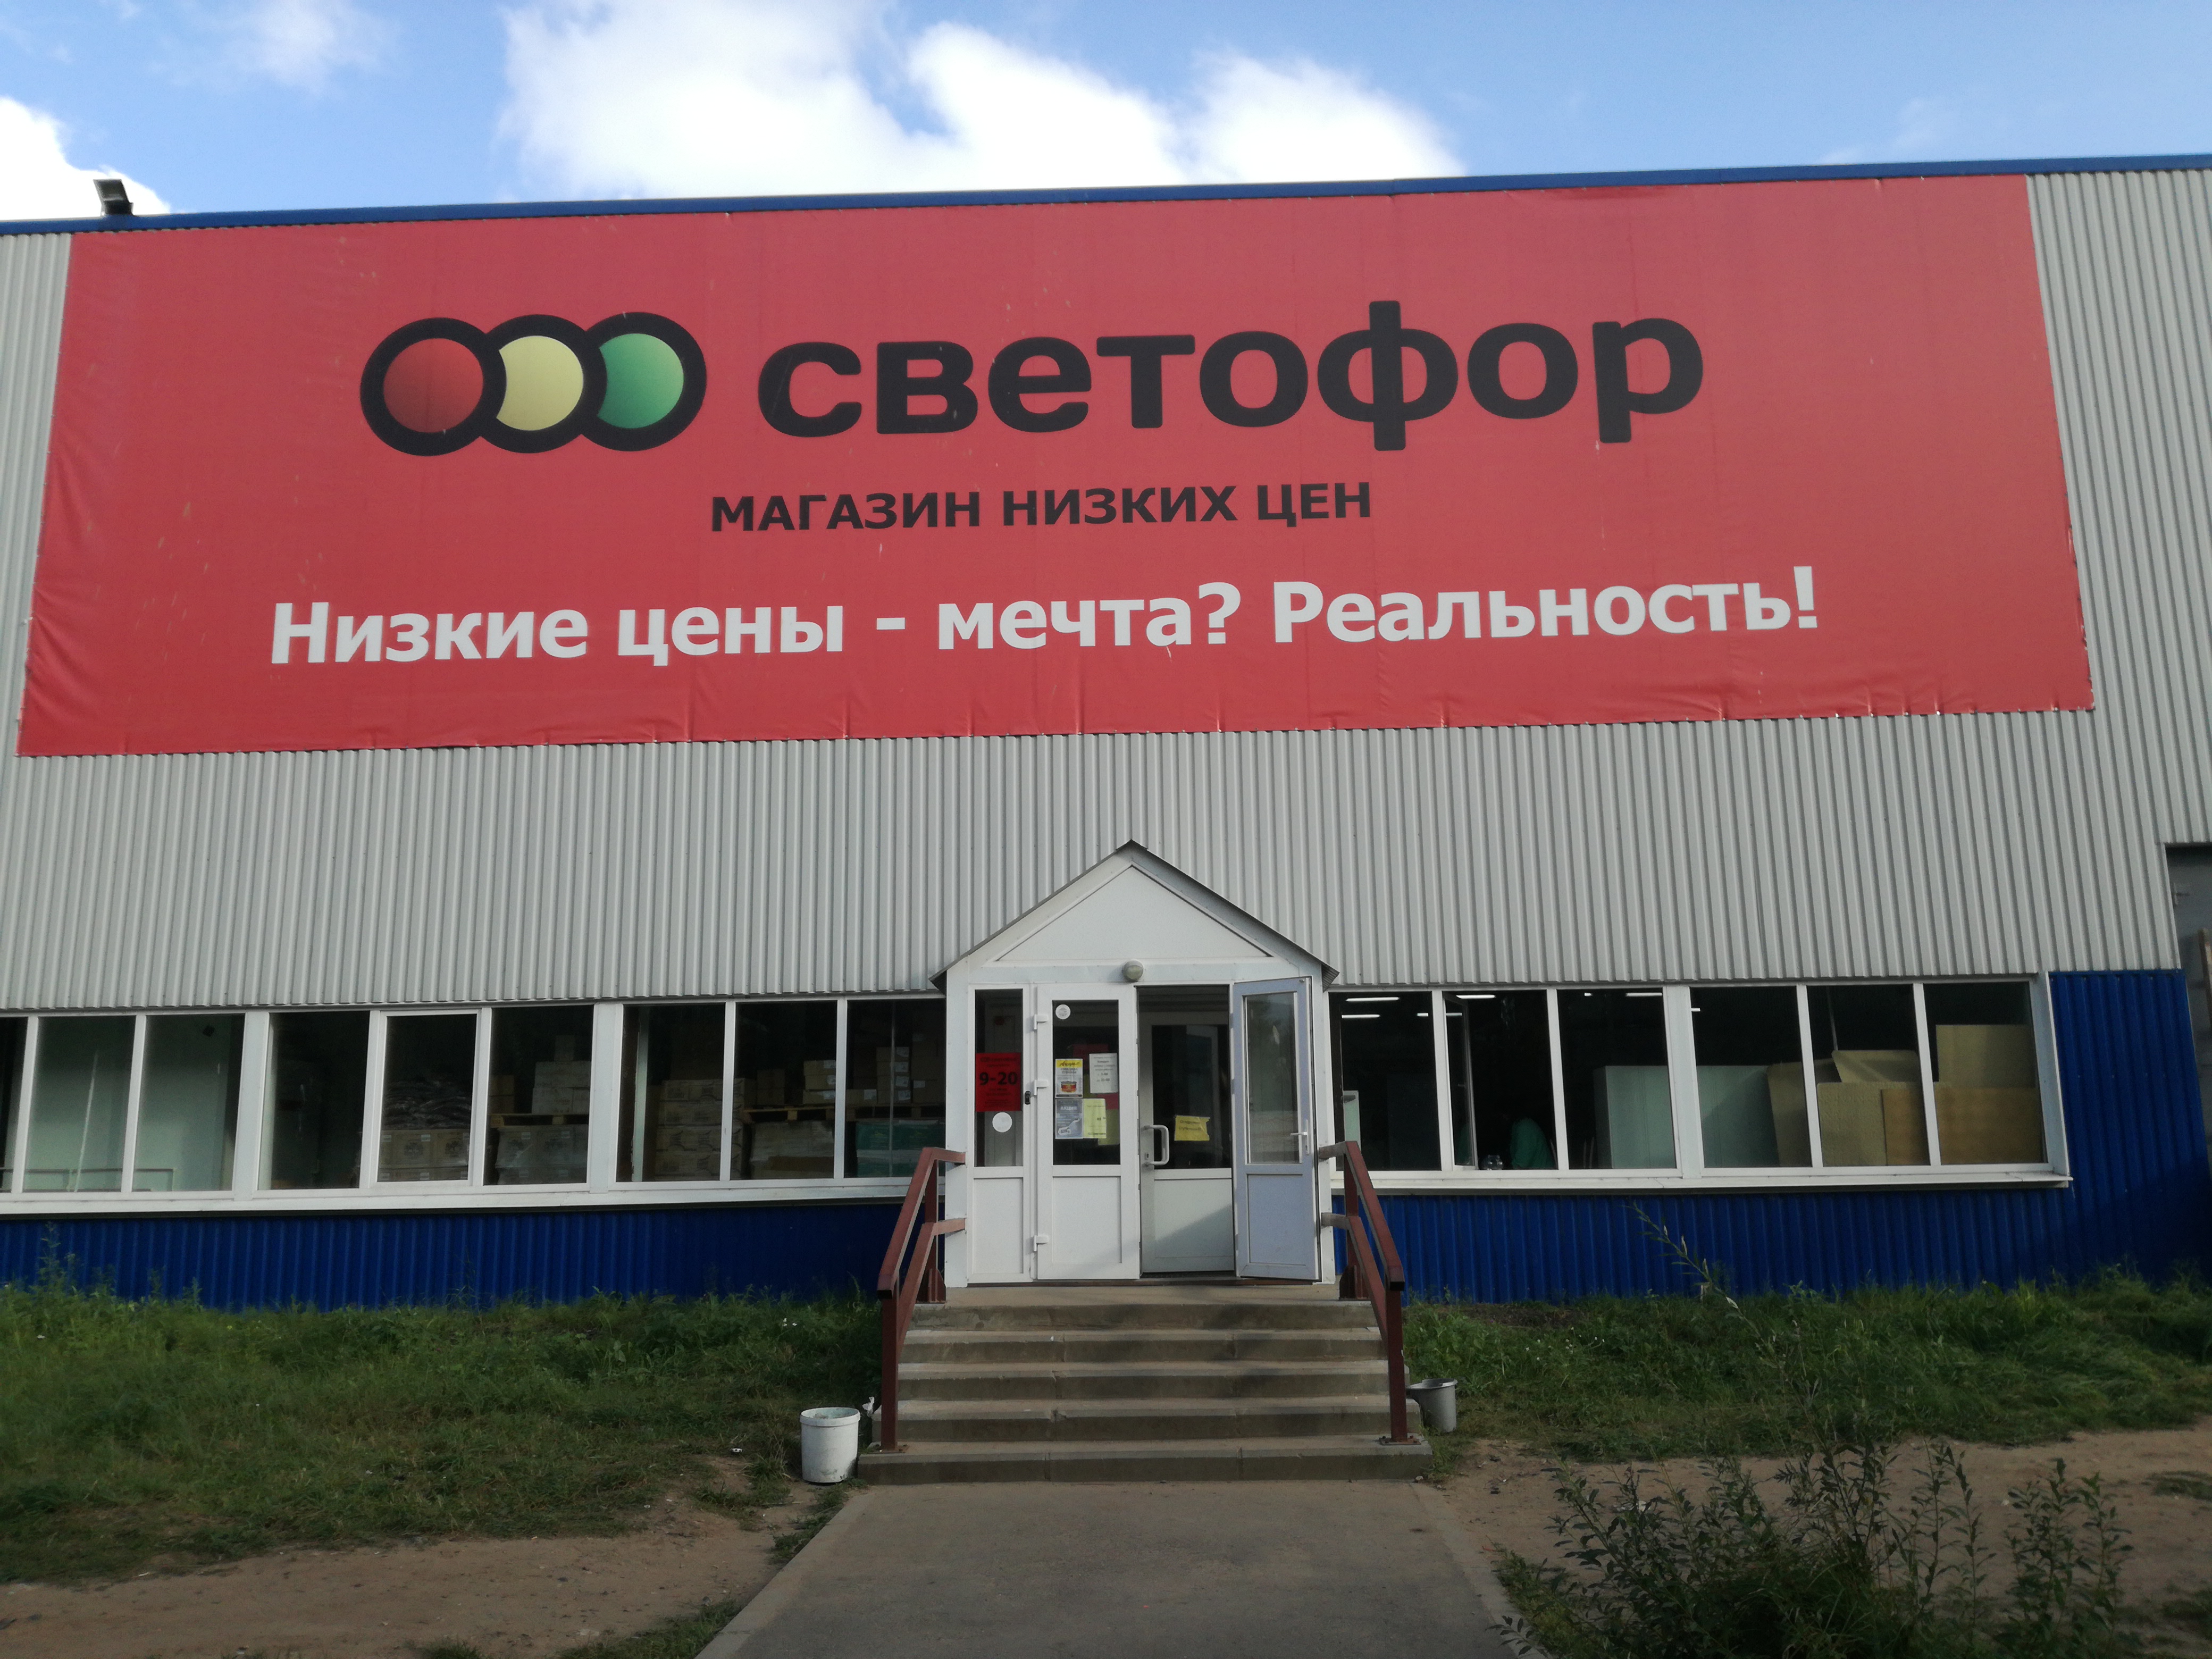 Светофор - магазин низких цен в Ярославле